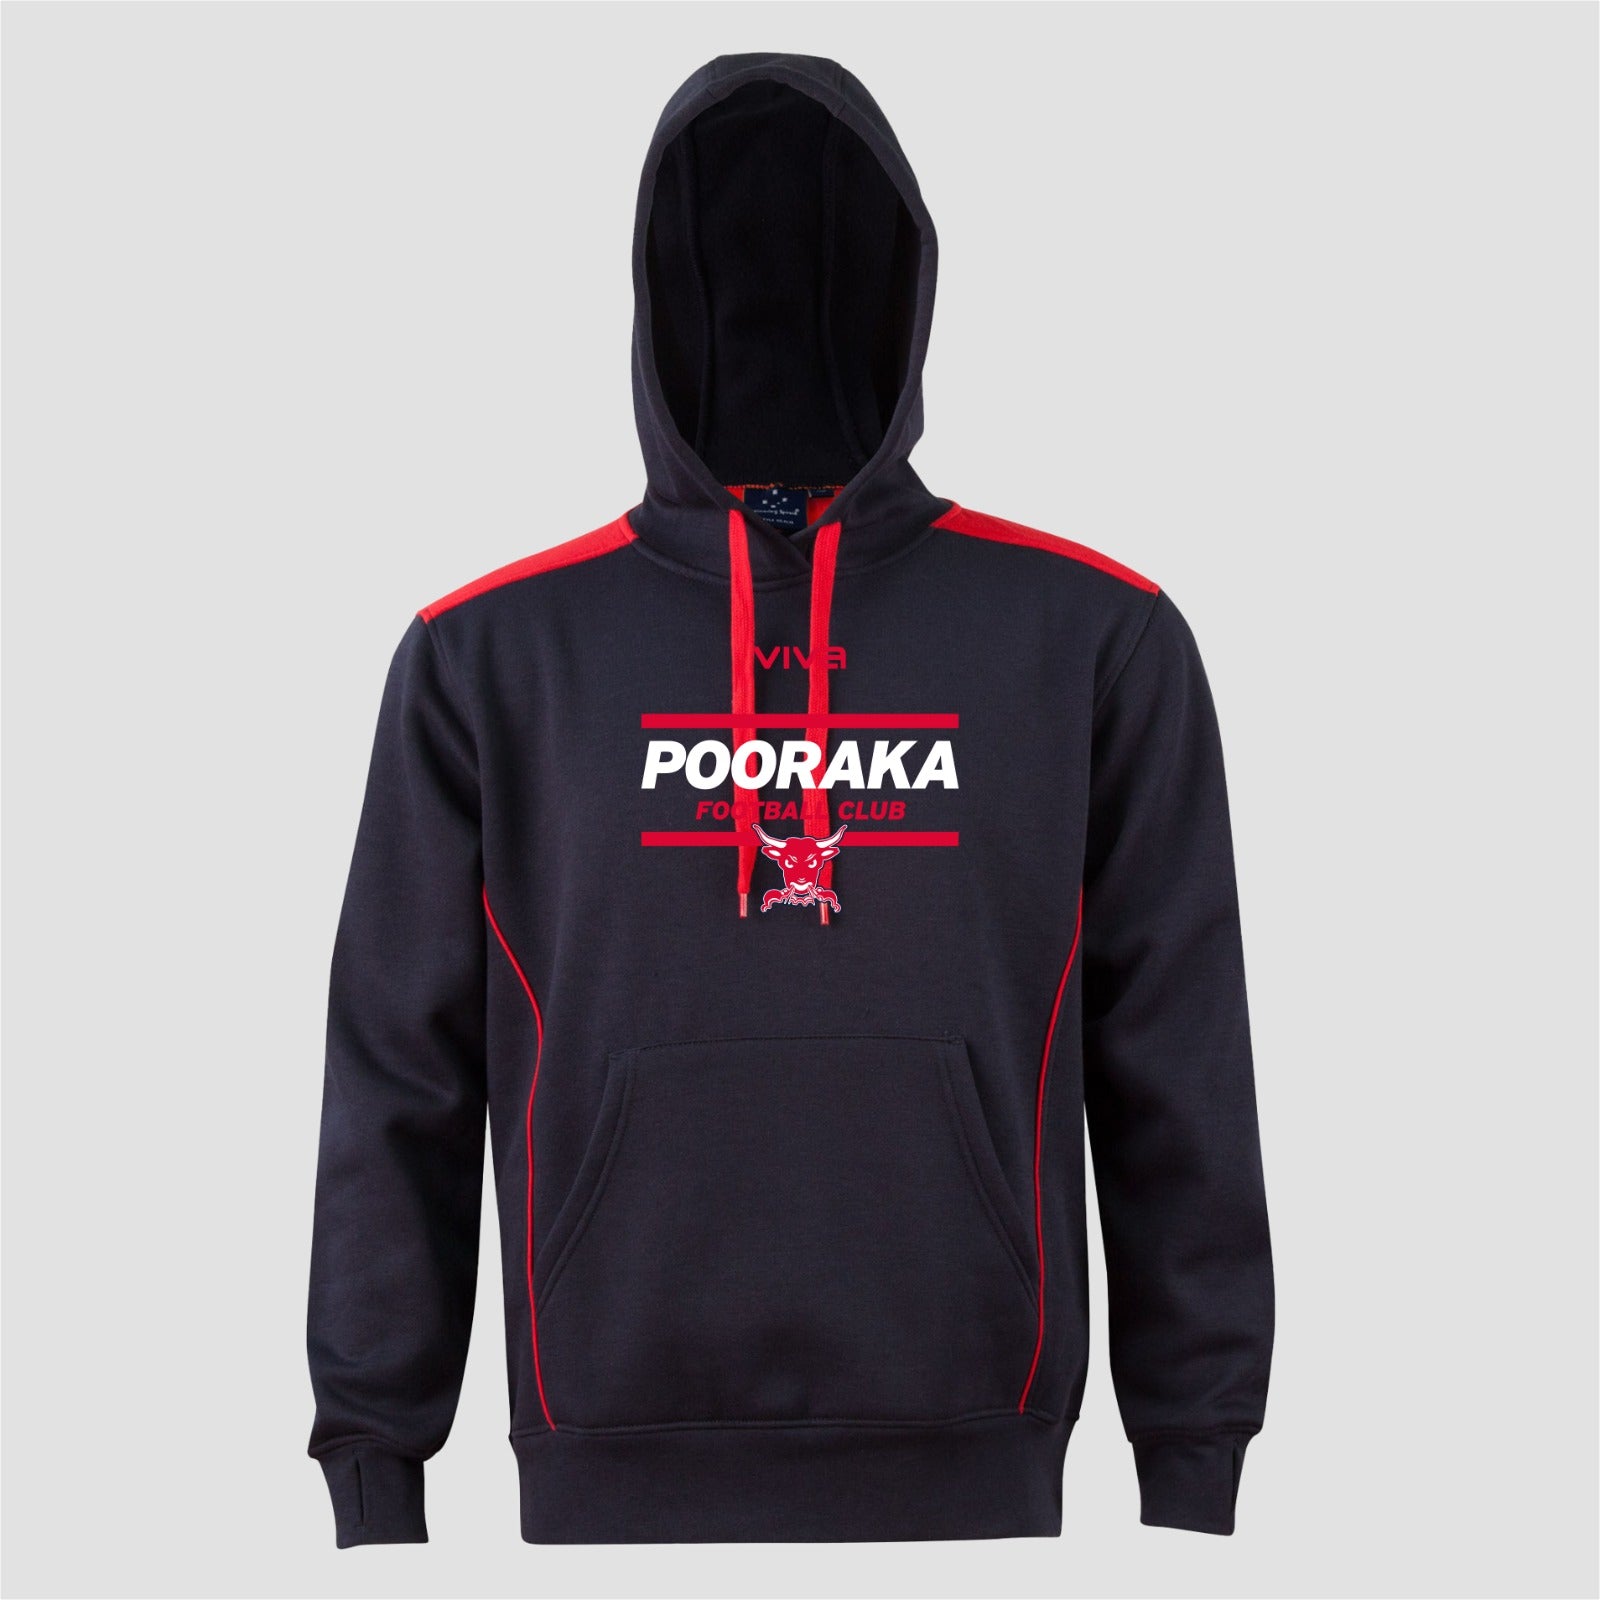 Pooraka Football Club